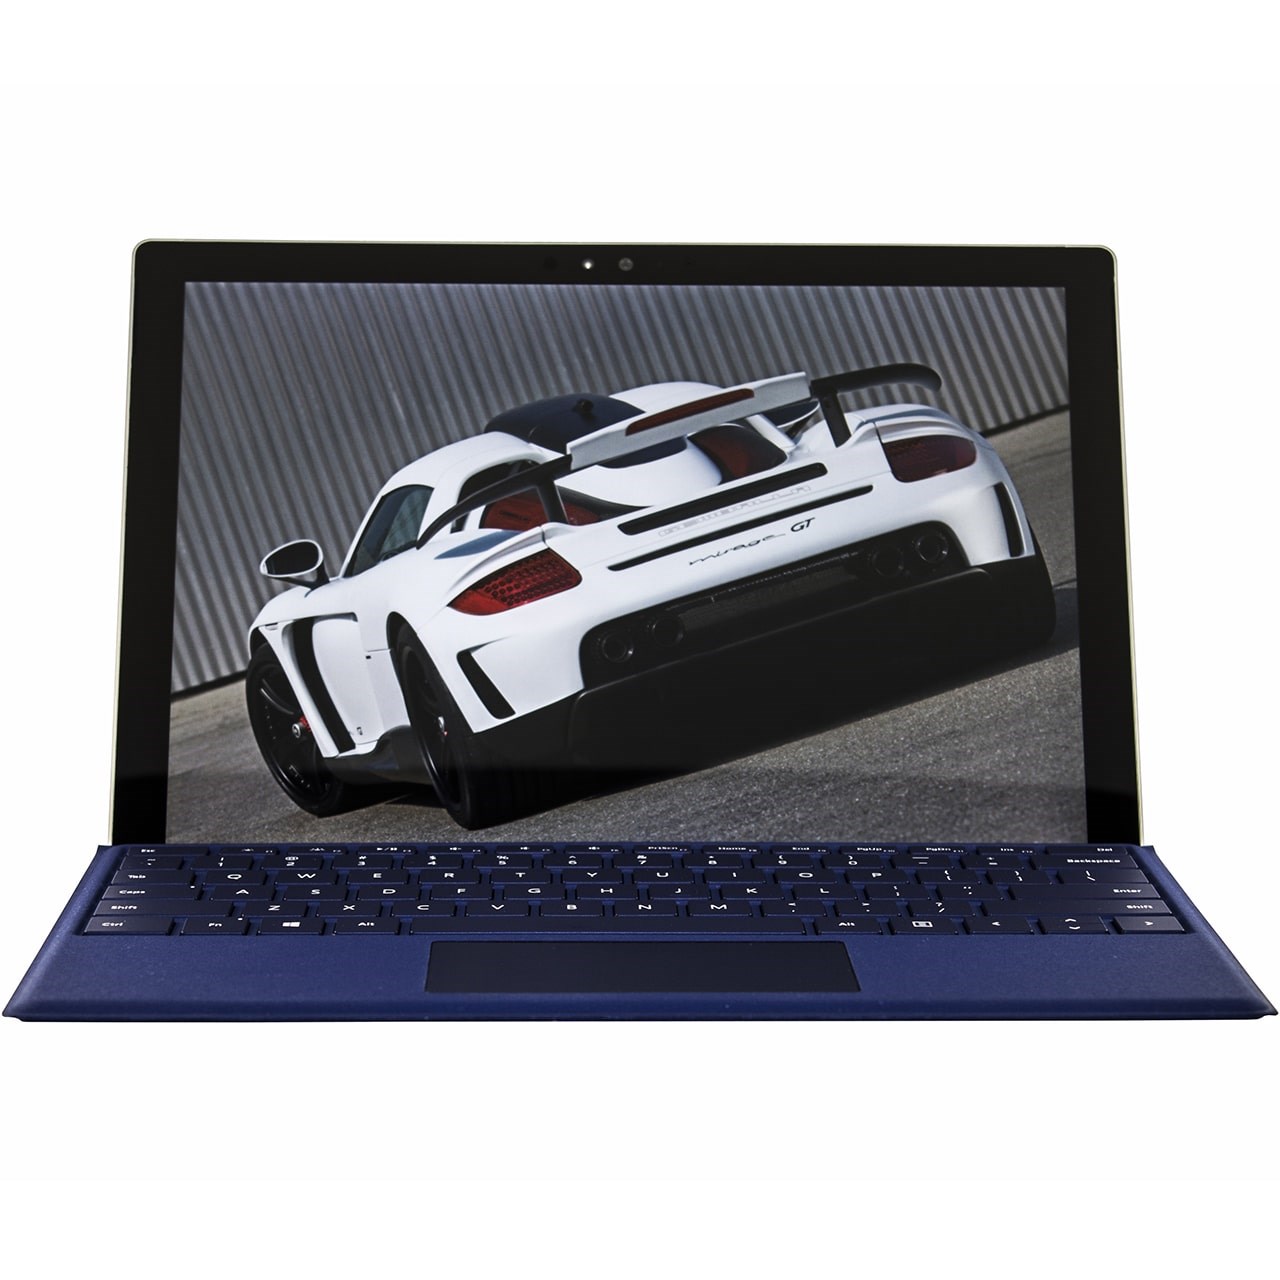 تبلت مایکروسافت مدل Surface Pro 4 - C به همراه کیبورد سرمه ای Dark Blue Type Cover و کیف Golden Guard - ظرفیت 256 گیگابایت